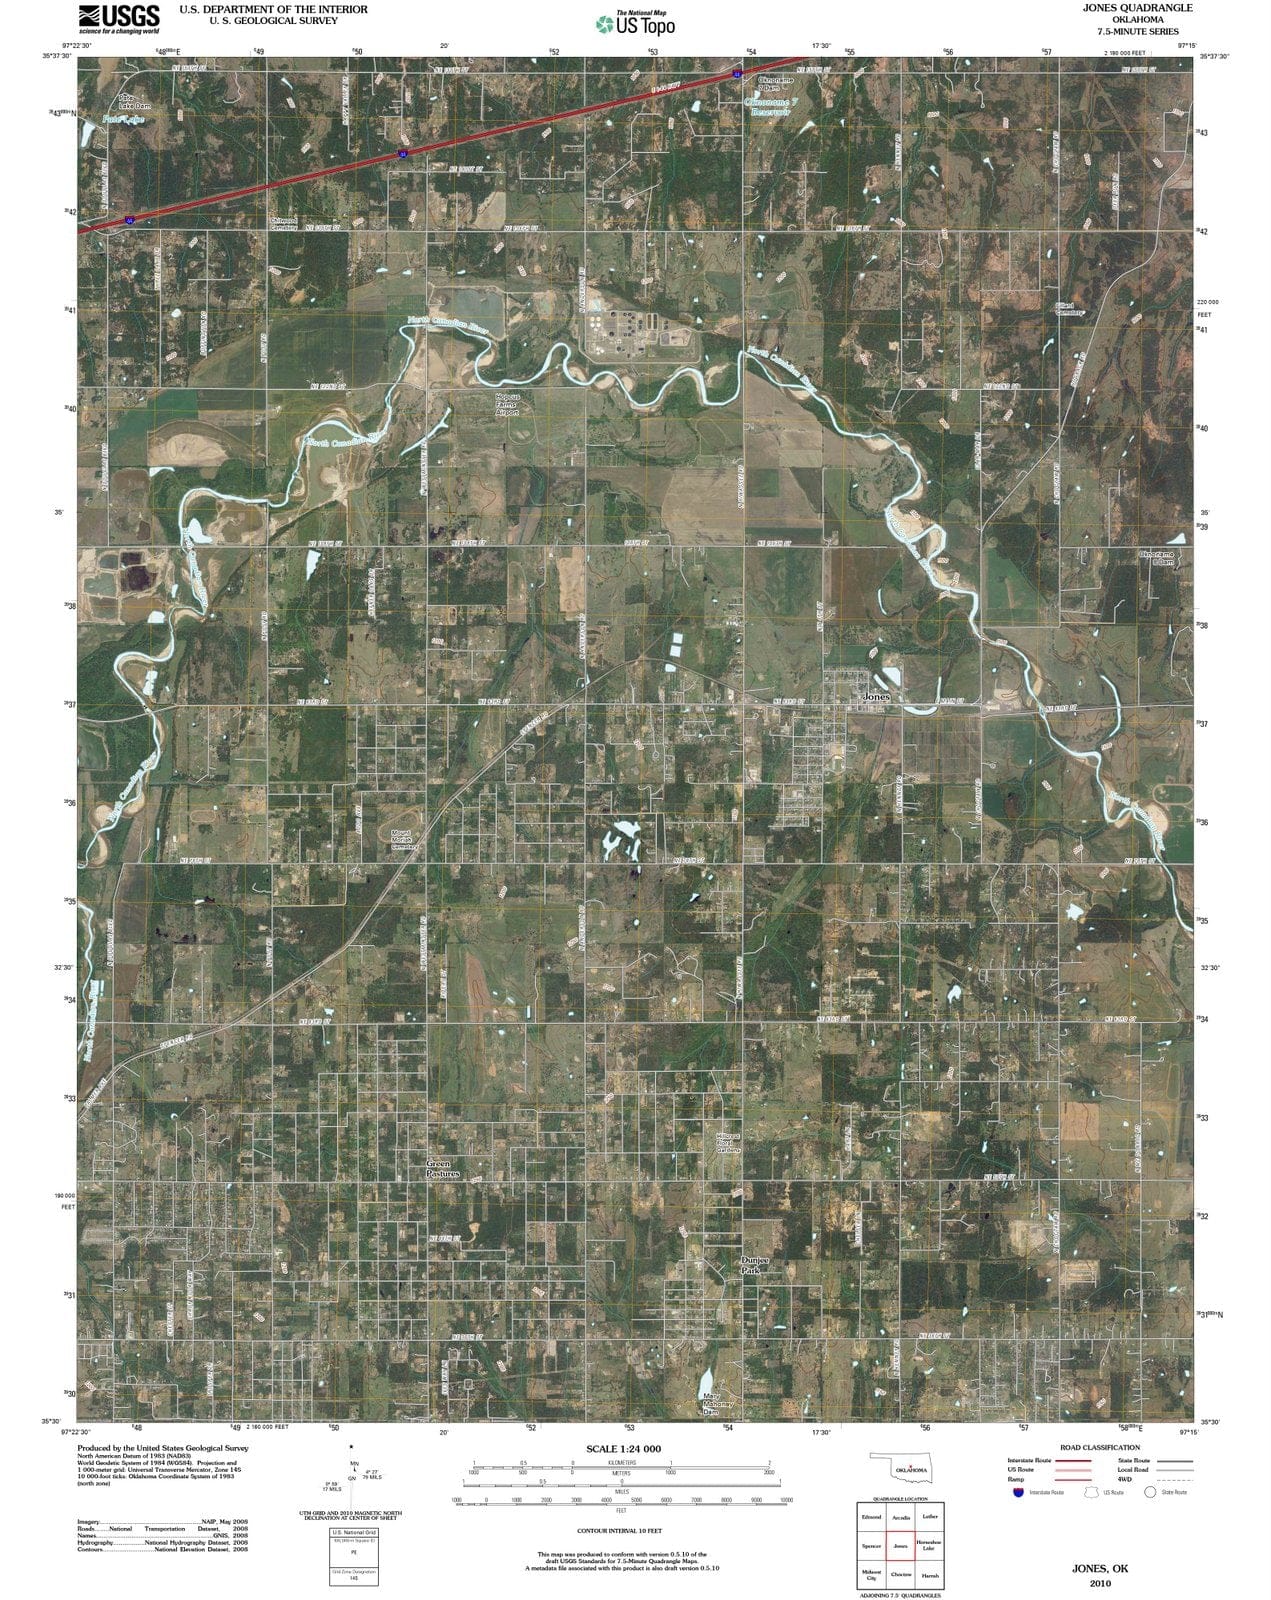 2010 Jones, OK - Oklahoma - USGS Topographic Map